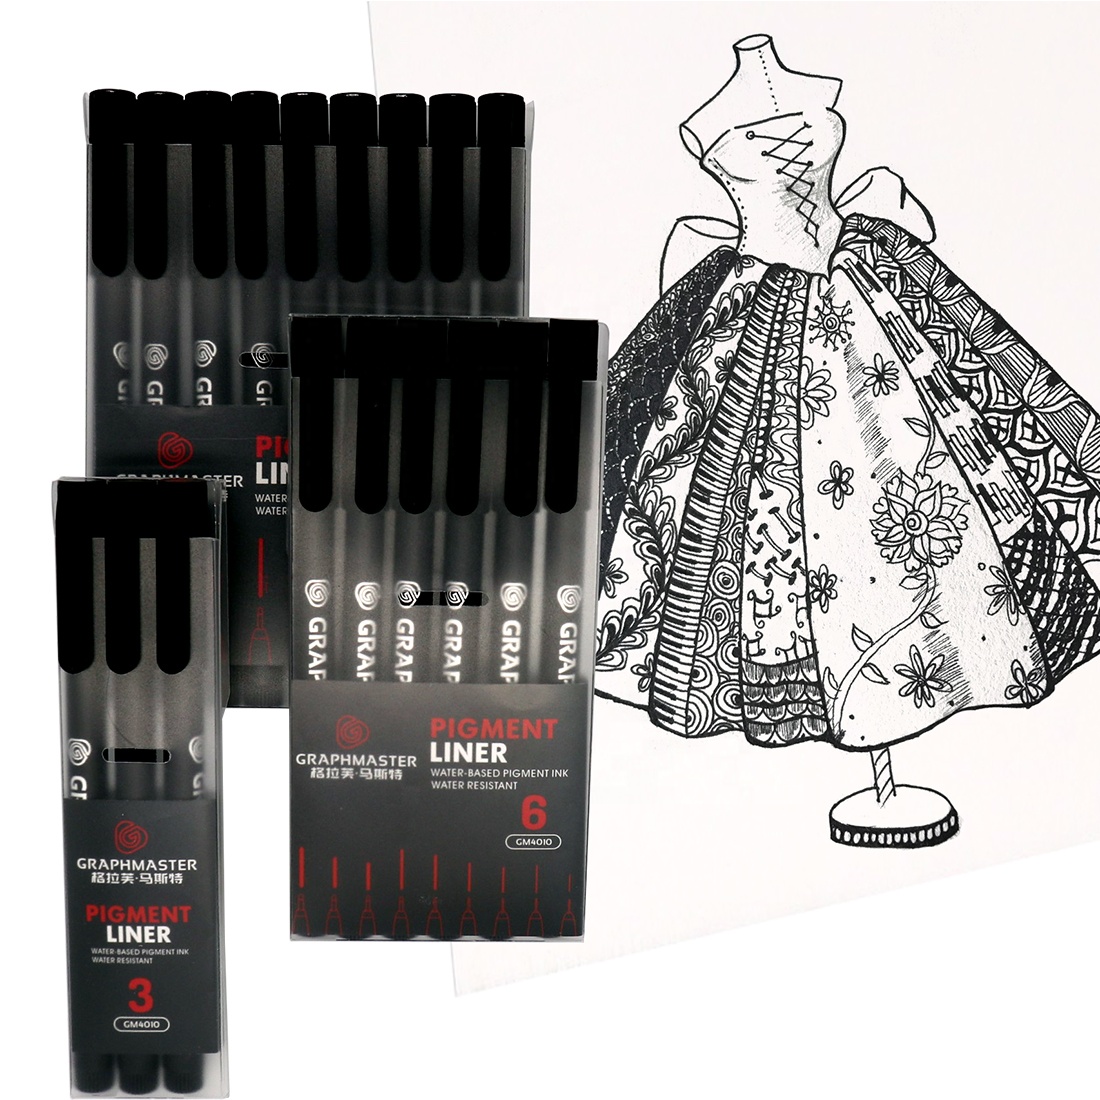 9 sizes black fineliner pigment liner pen micro needle pen sketch waterproof drawing pen art school supplies1